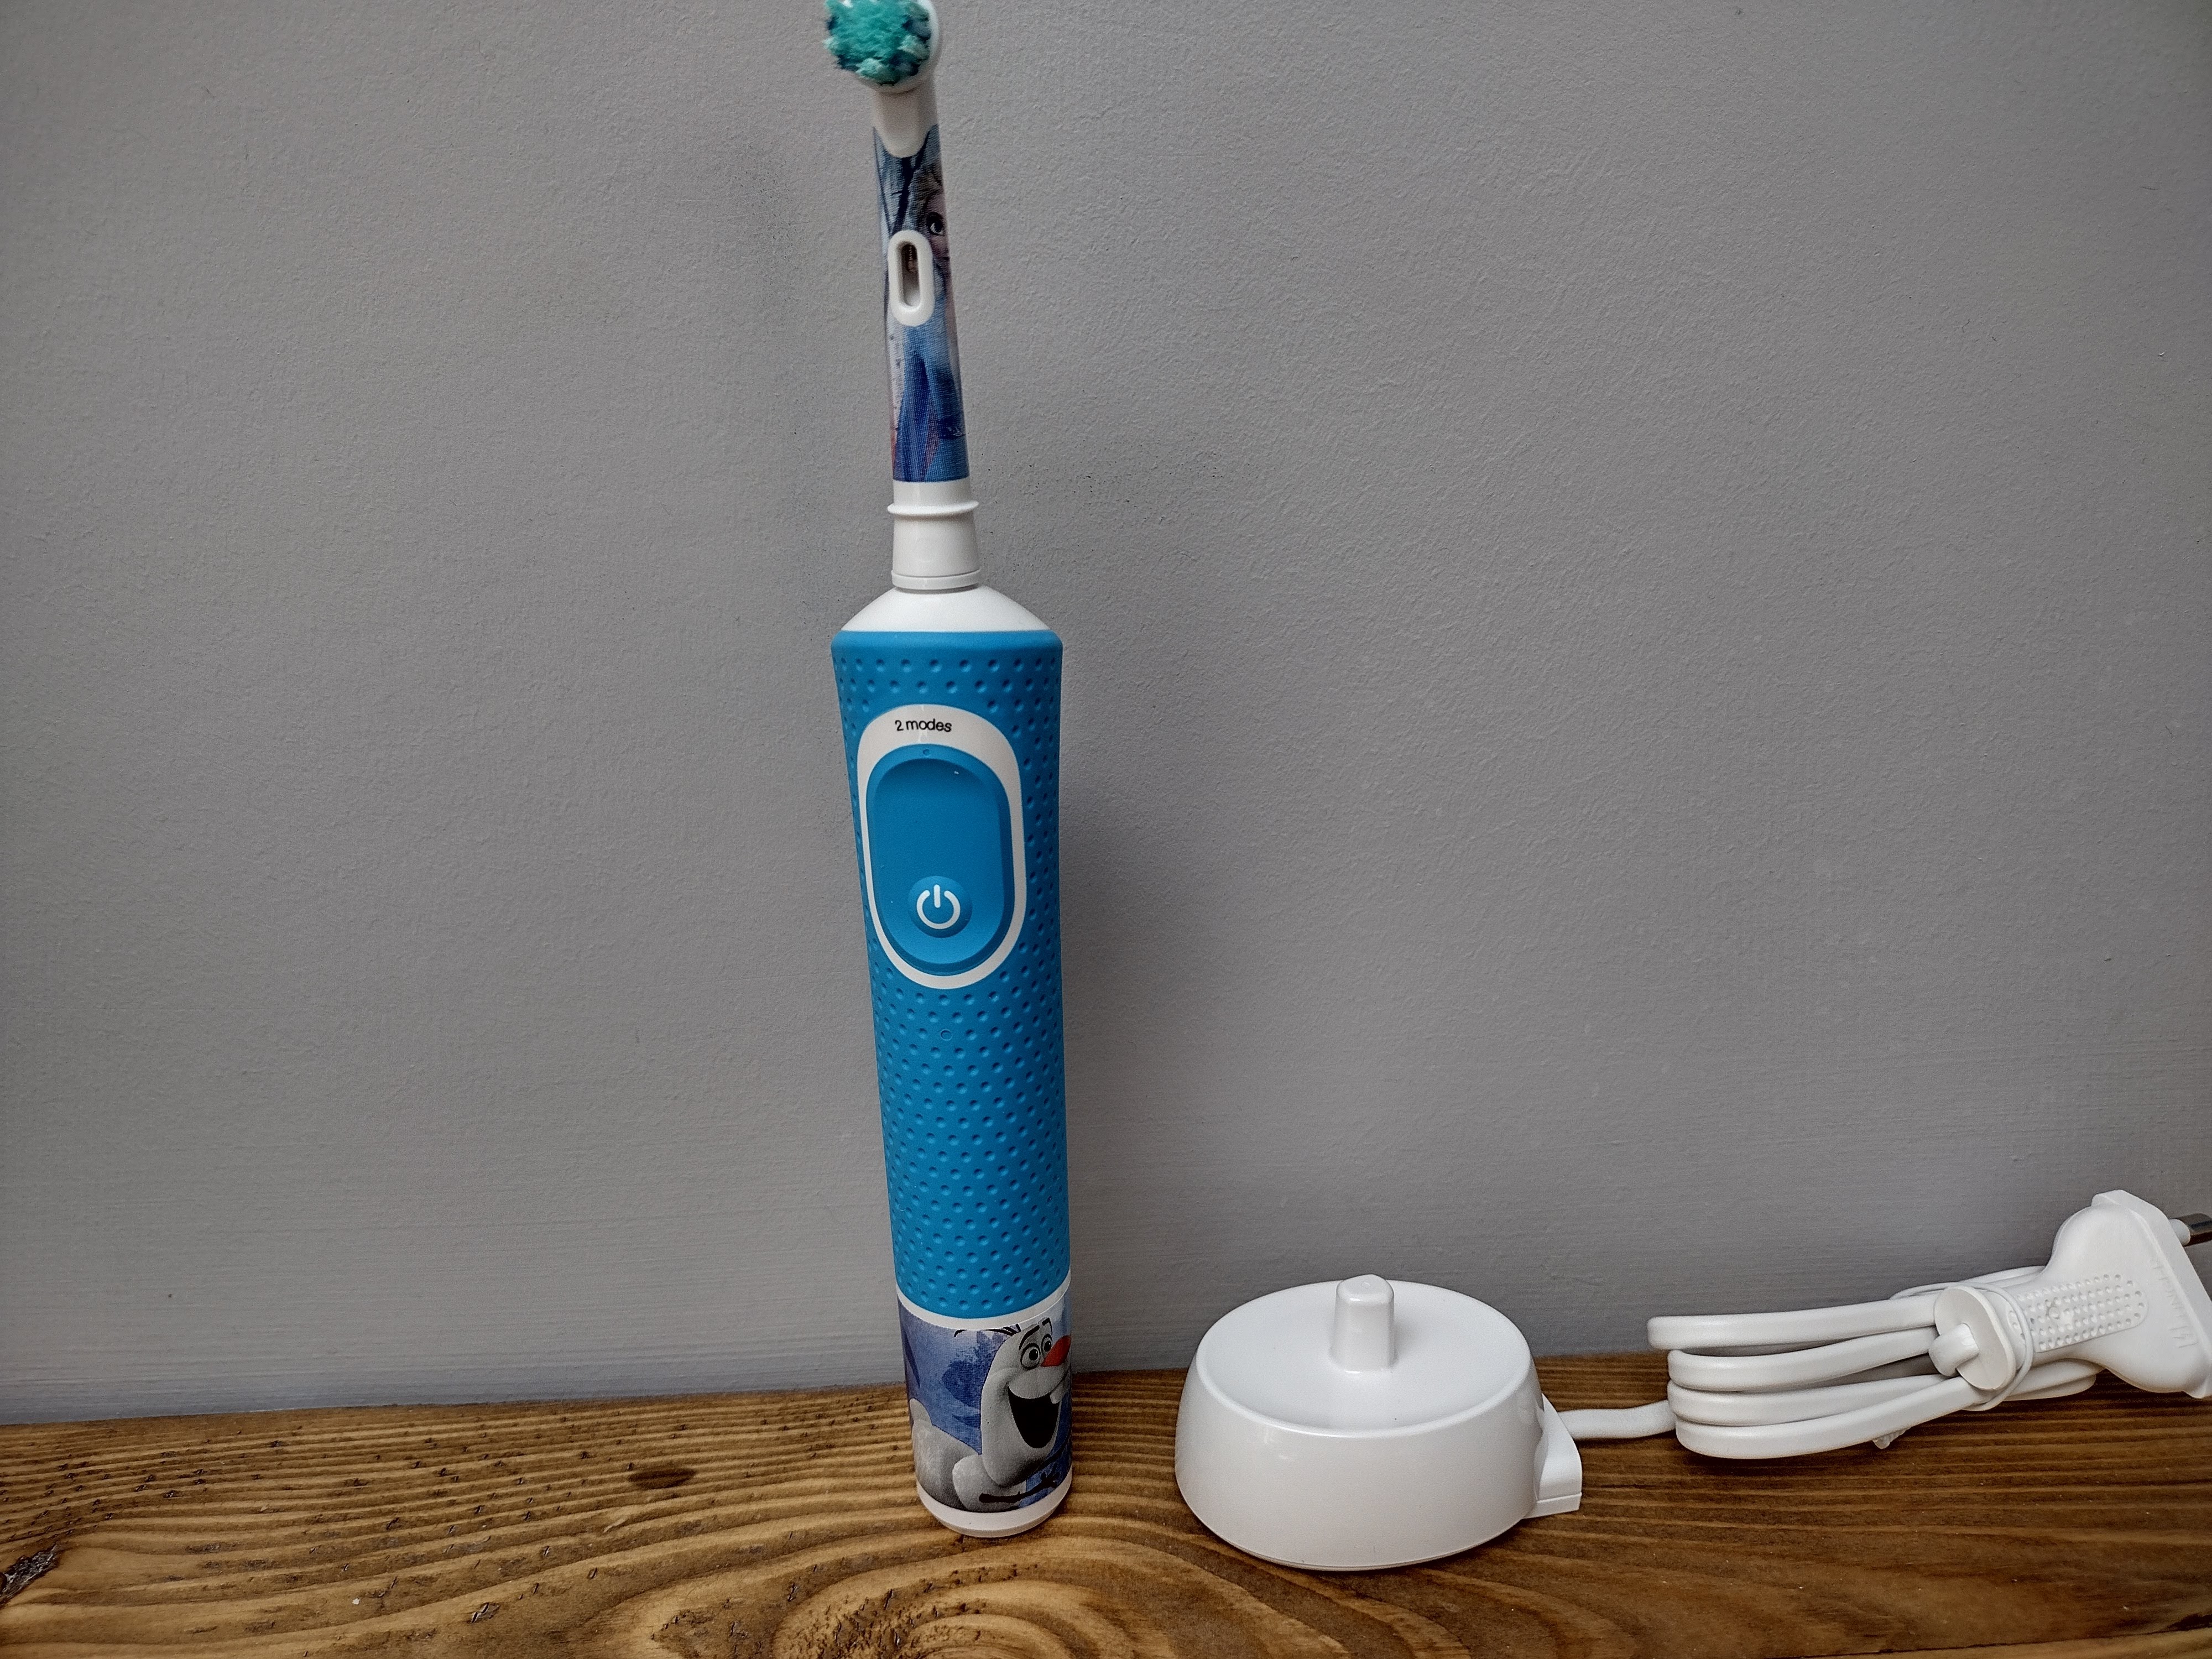 oral b kids electric toothbrush